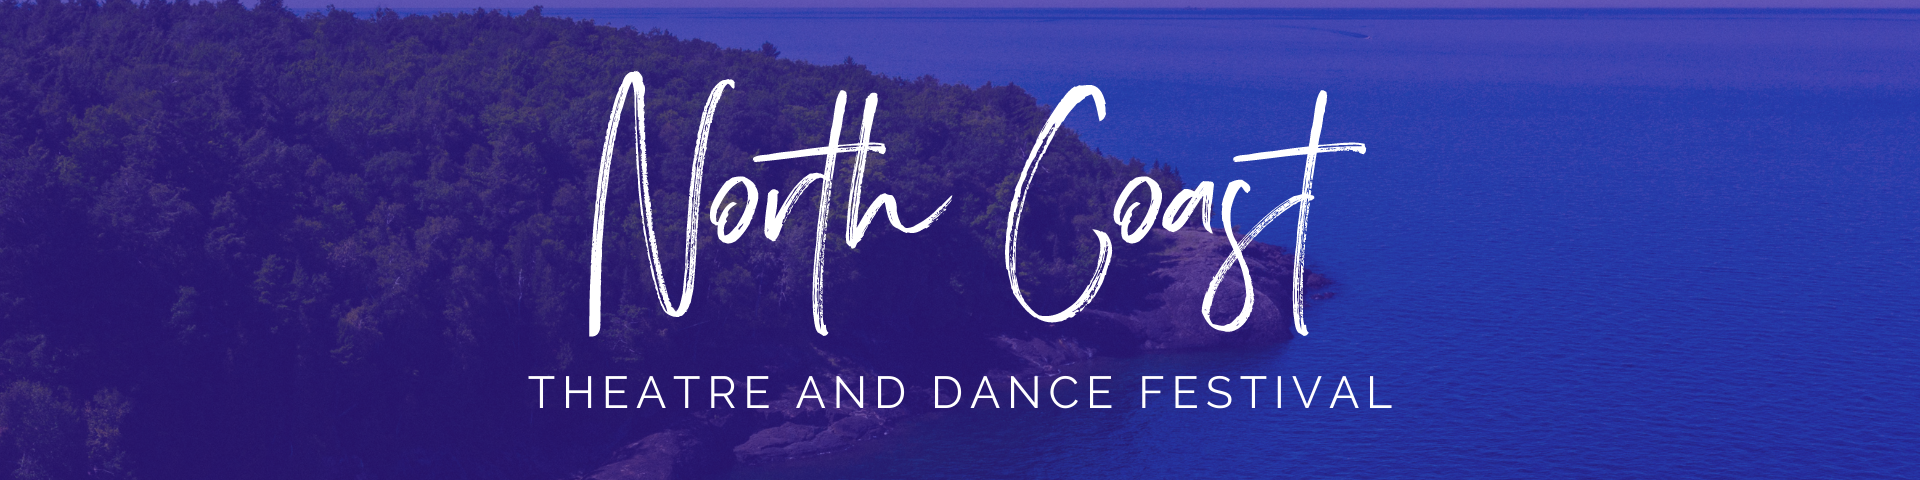 North Coast Theatre Festival Header